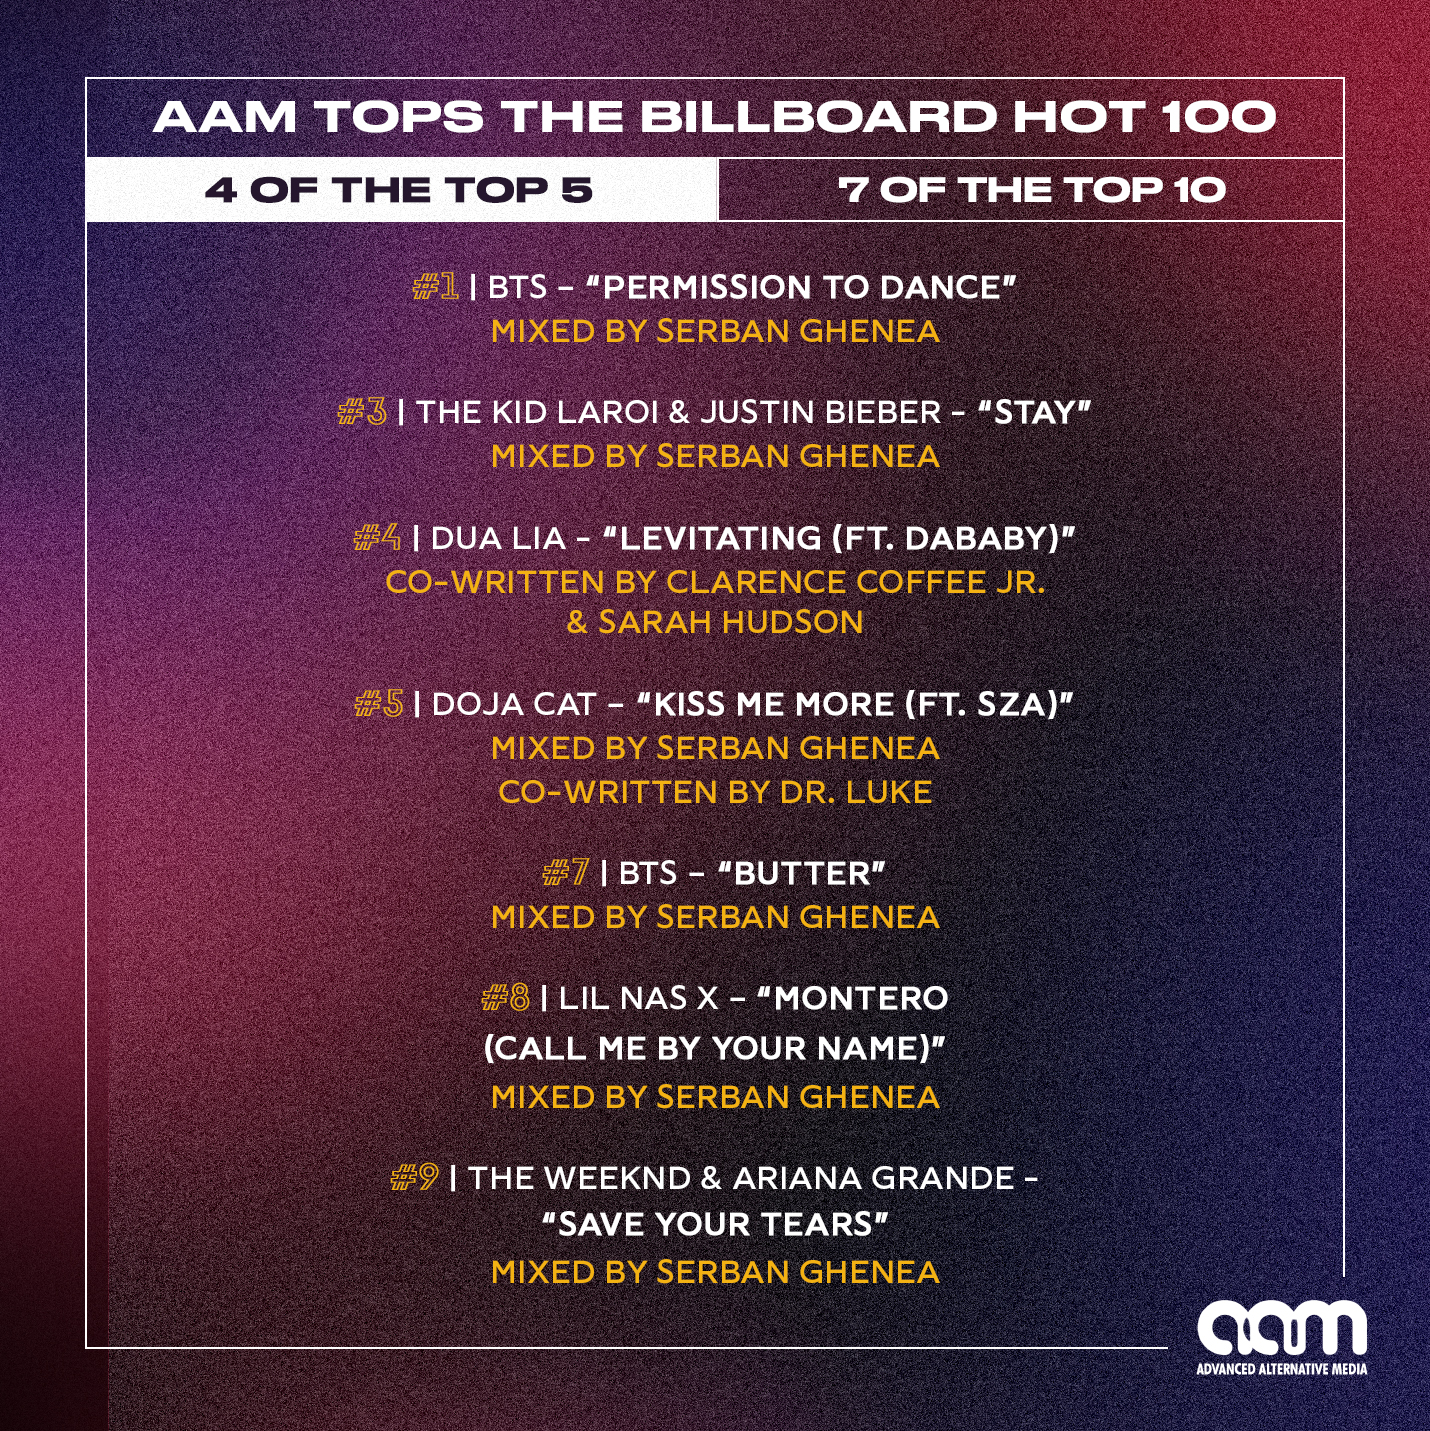 AAM Tops the Billboard Hot 100!